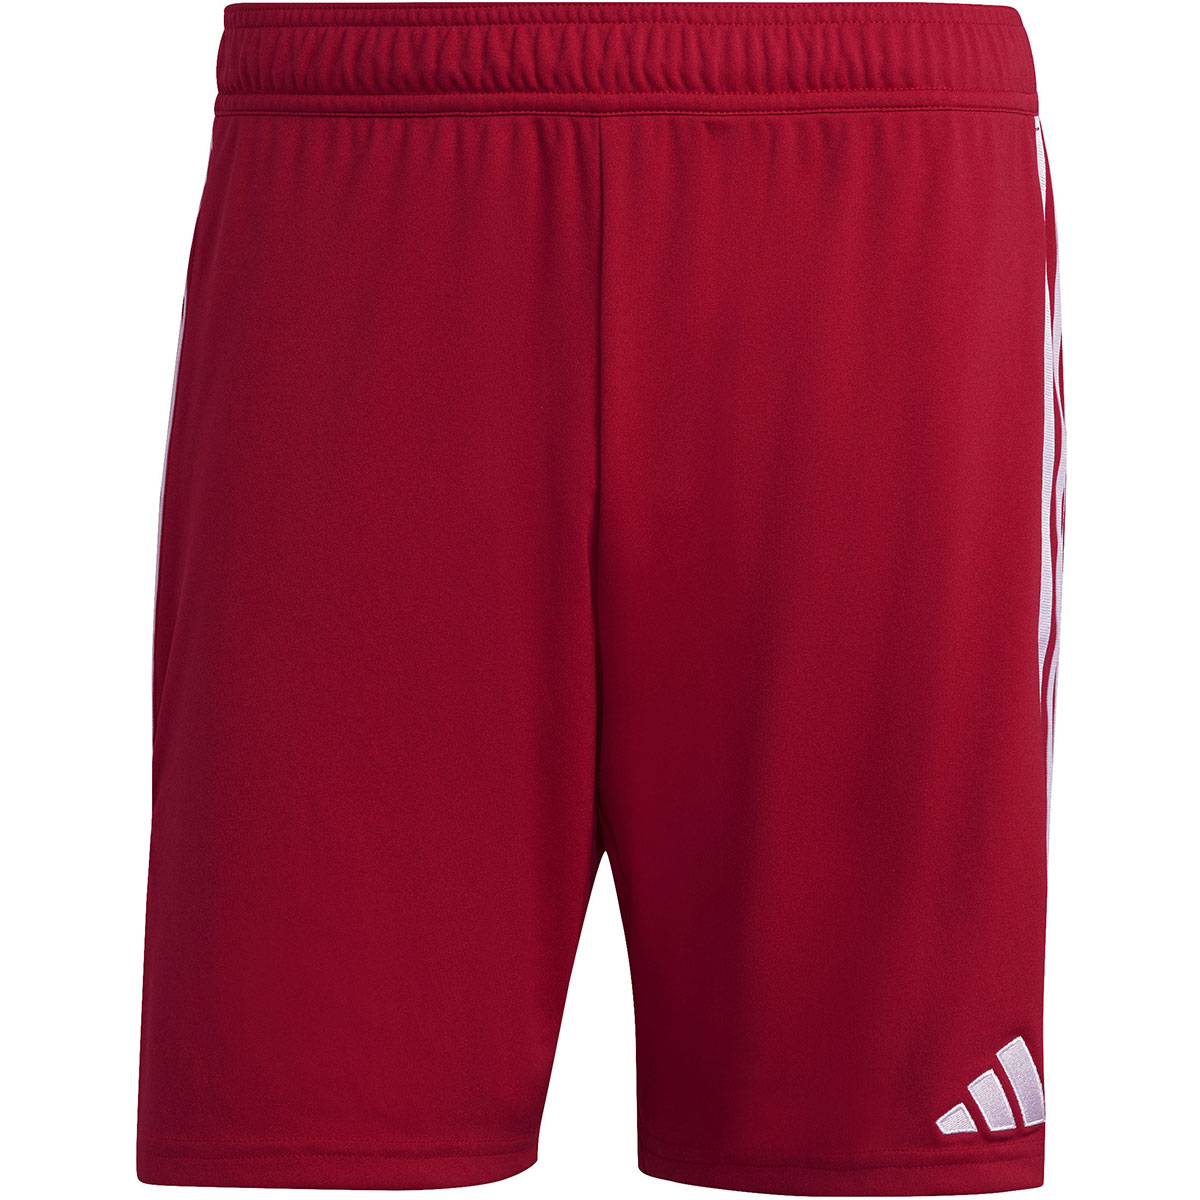 Adidas Herren Shorts Tiro 23 rot-weiß